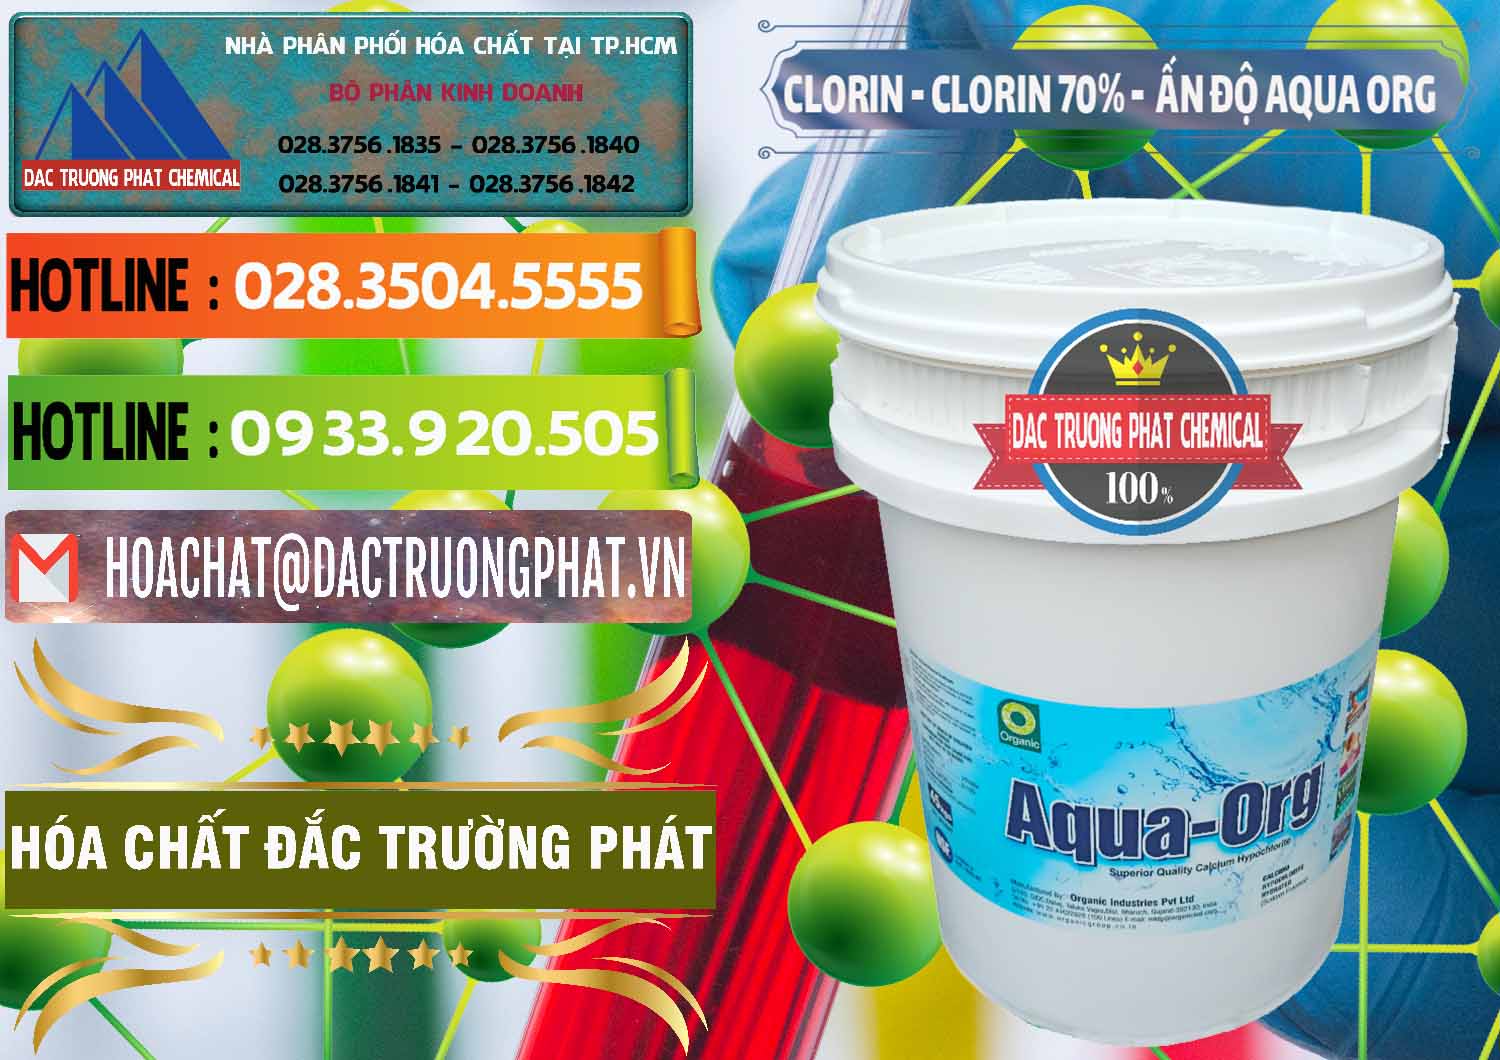 Đơn vị cung cấp & bán Chlorine – Clorin Ấn Độ Aqua ORG Organic India - 0051 - Cty bán _ cung cấp hóa chất tại TP.HCM - cungcaphoachat.com.vn